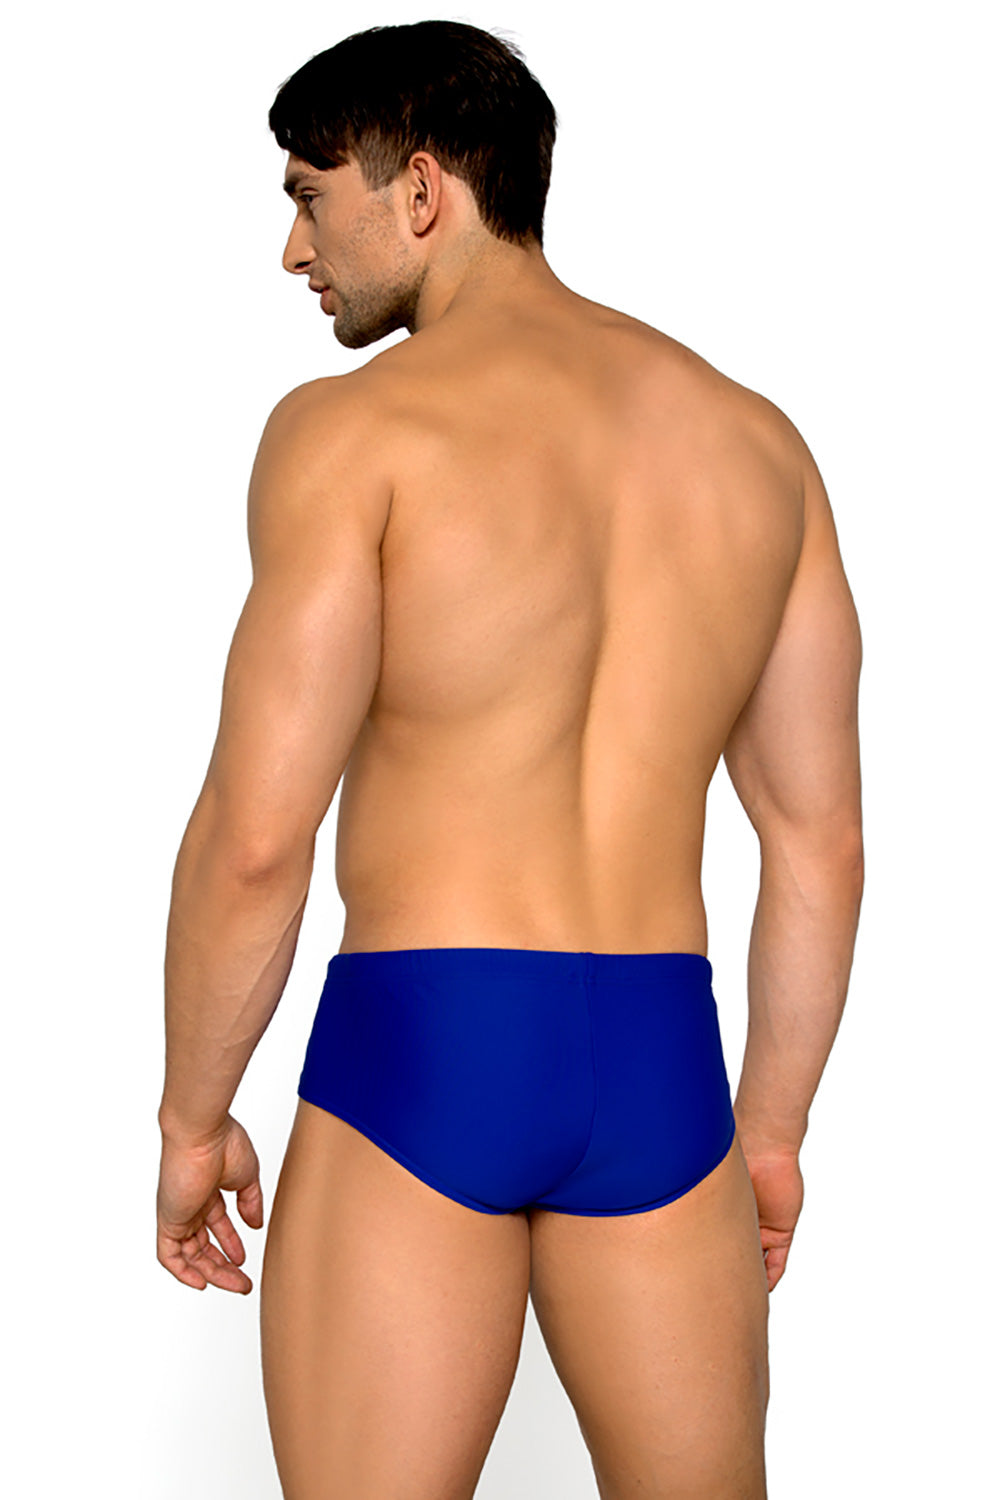 Swimming trunks model 182791 Elsy Style Boxers Shorts, Slips, Swimming Briefs for Men